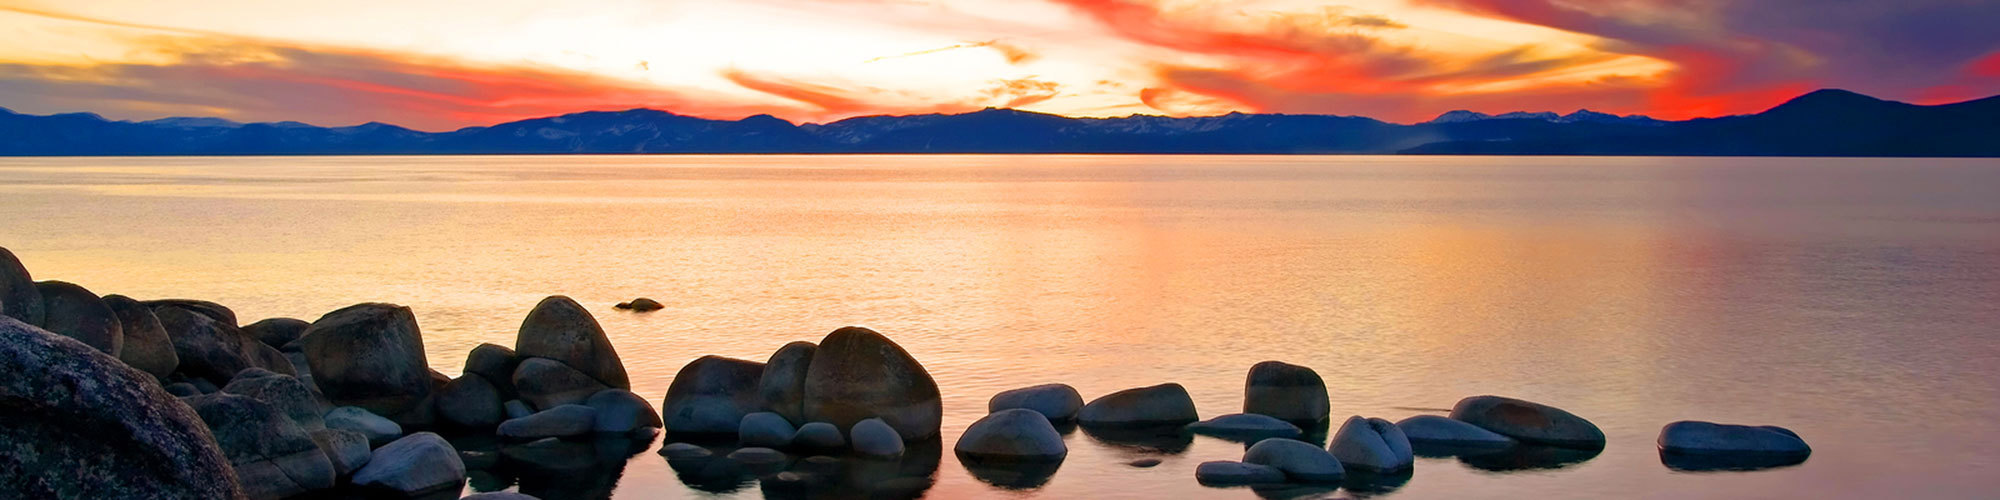 Lake tahoe at sunset